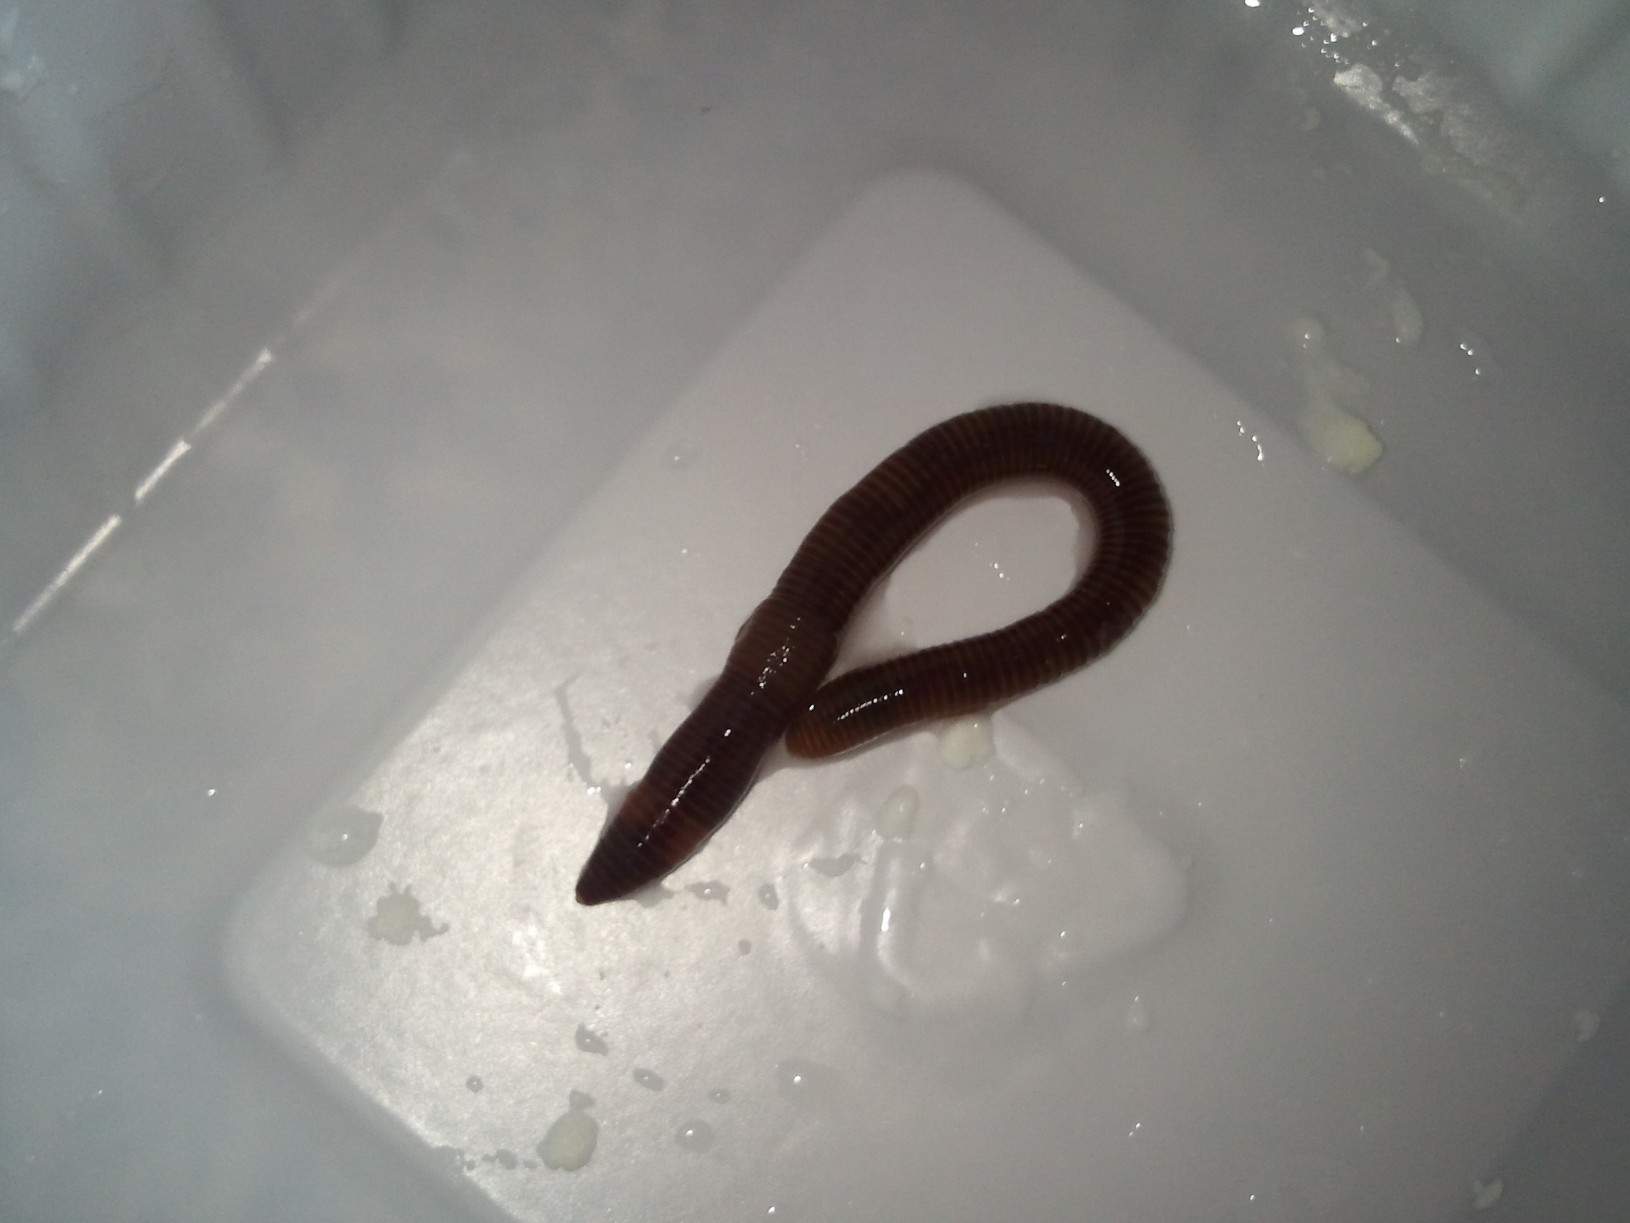 Schwarze würmer in toilette